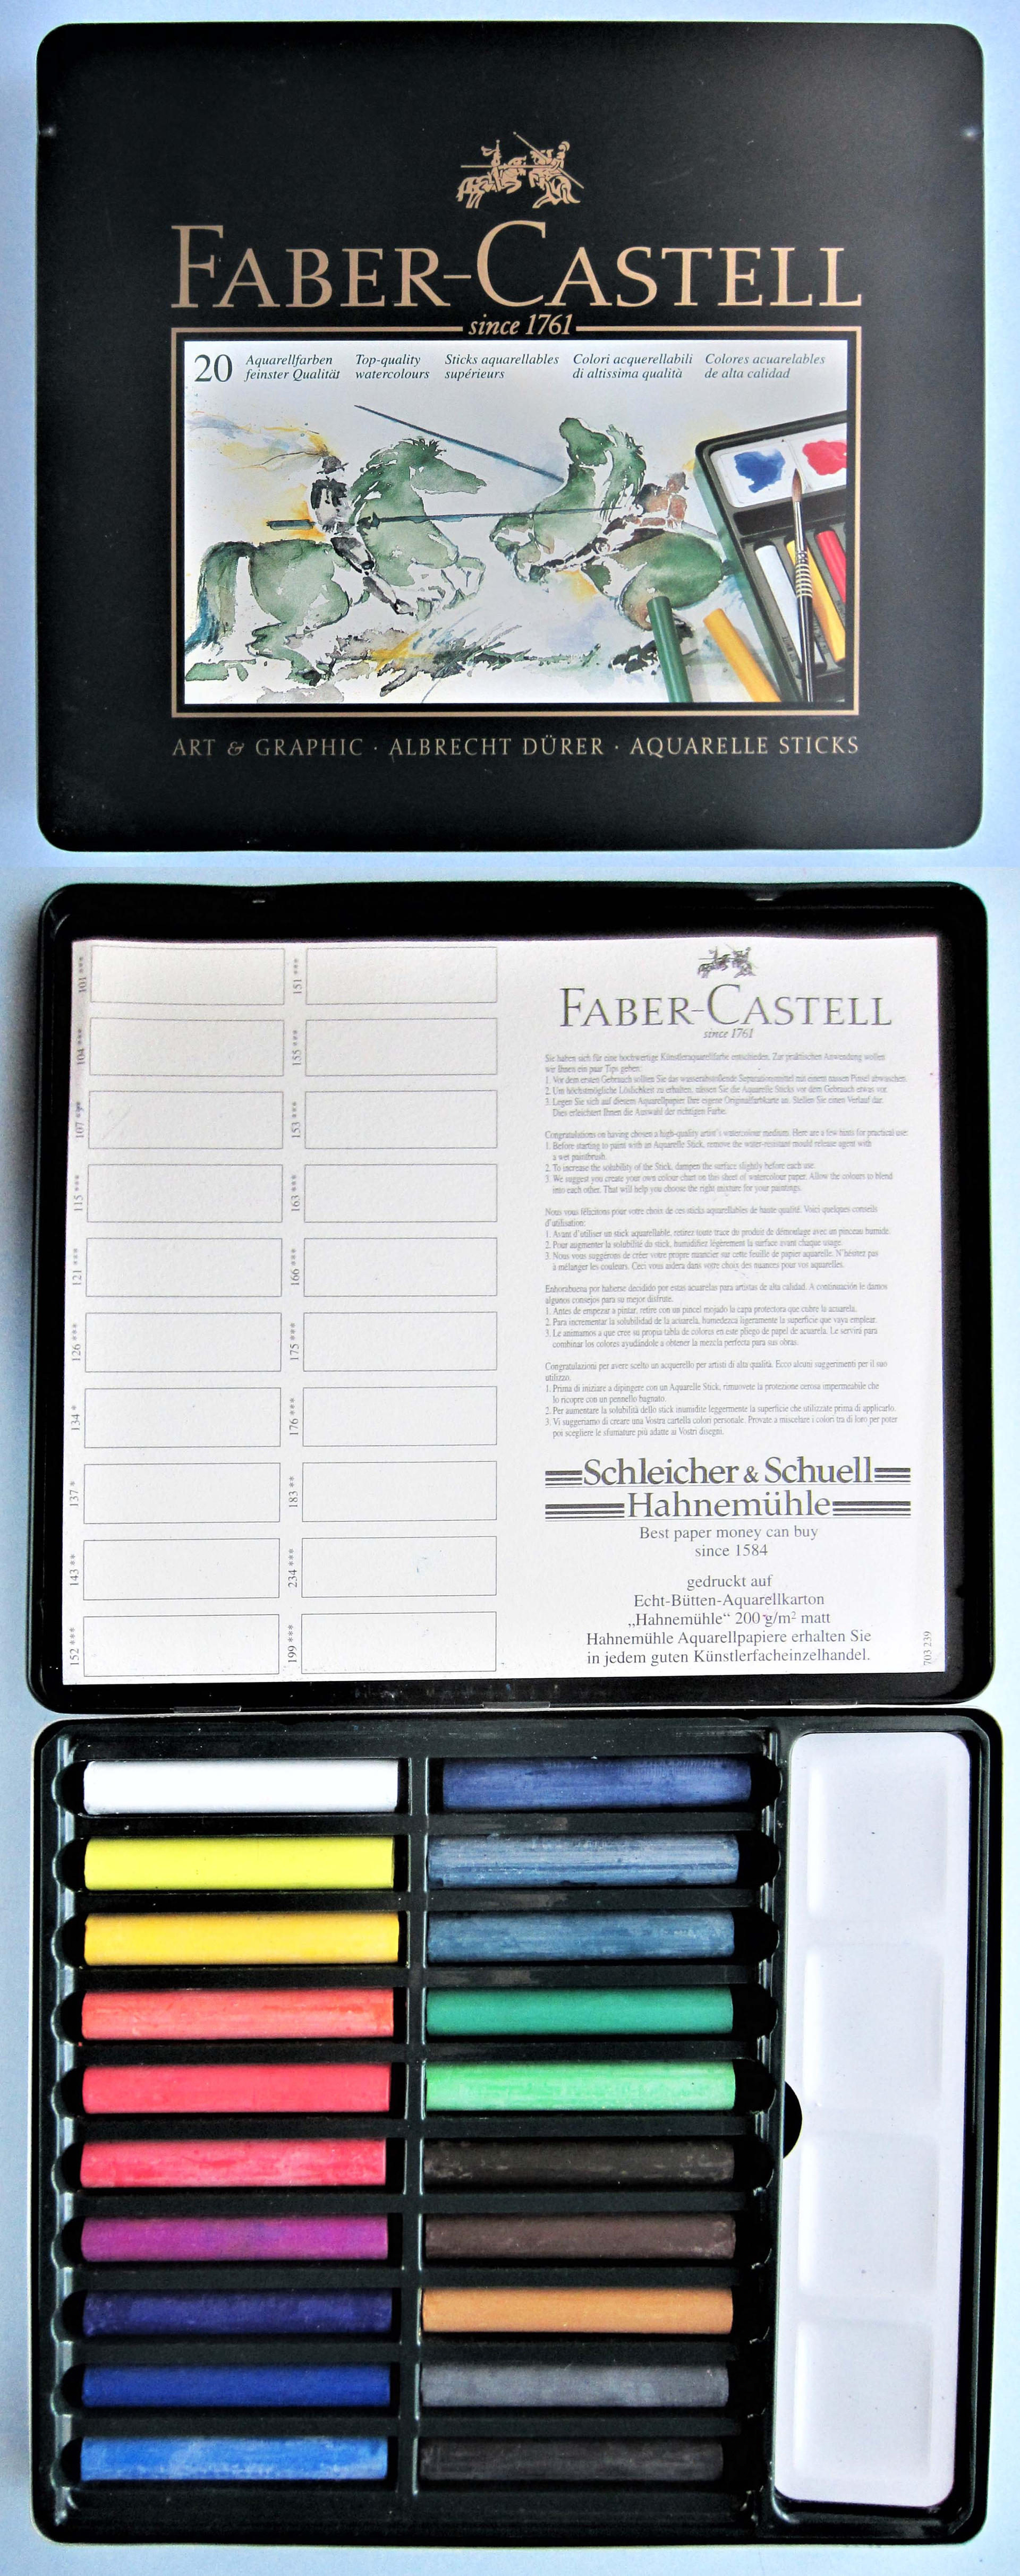 Faber Castell 20 Albrecht Duerer Aquarelle Sticks by pesim65 on DeviantArt